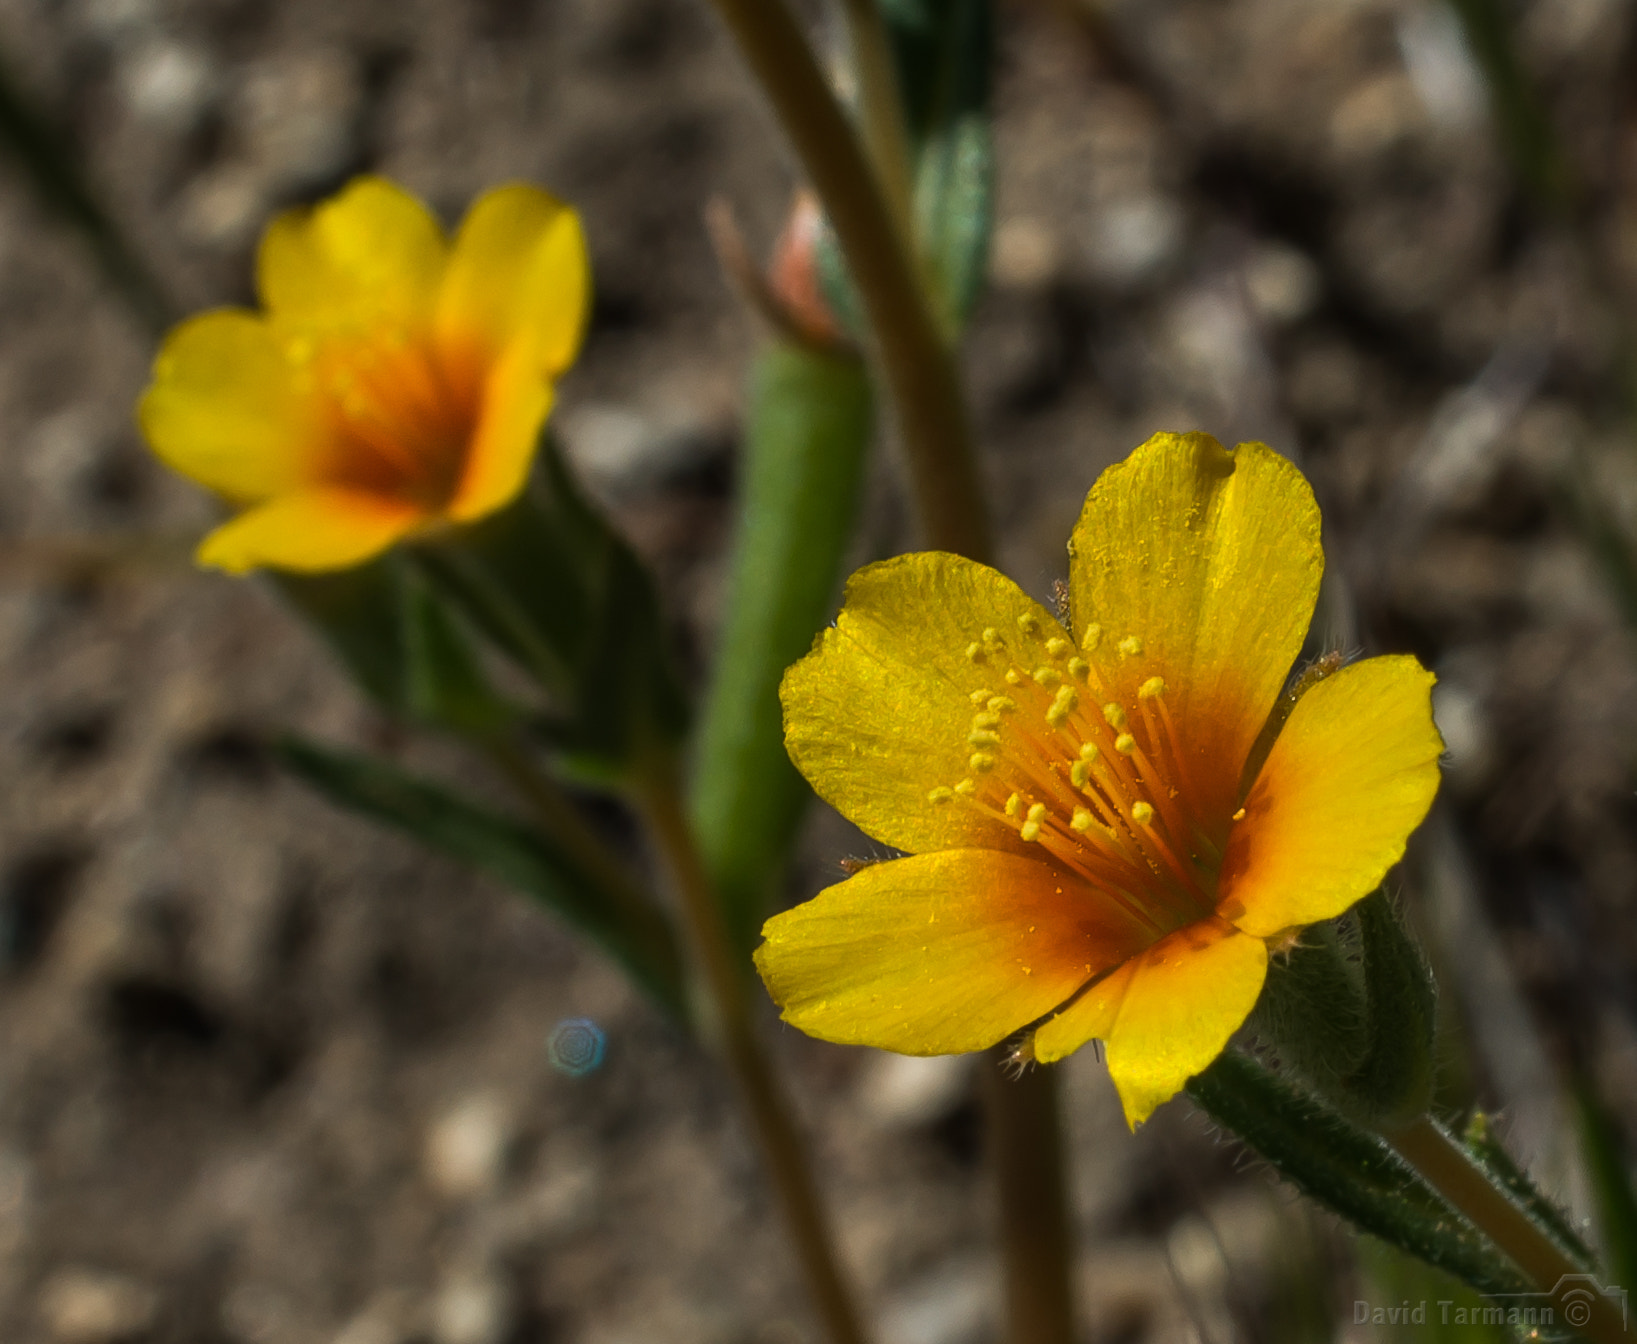 AF Zoom-Nikkor 28-85mm f/3.5-4.5 sample photo. Anza-borrego wild flower photography